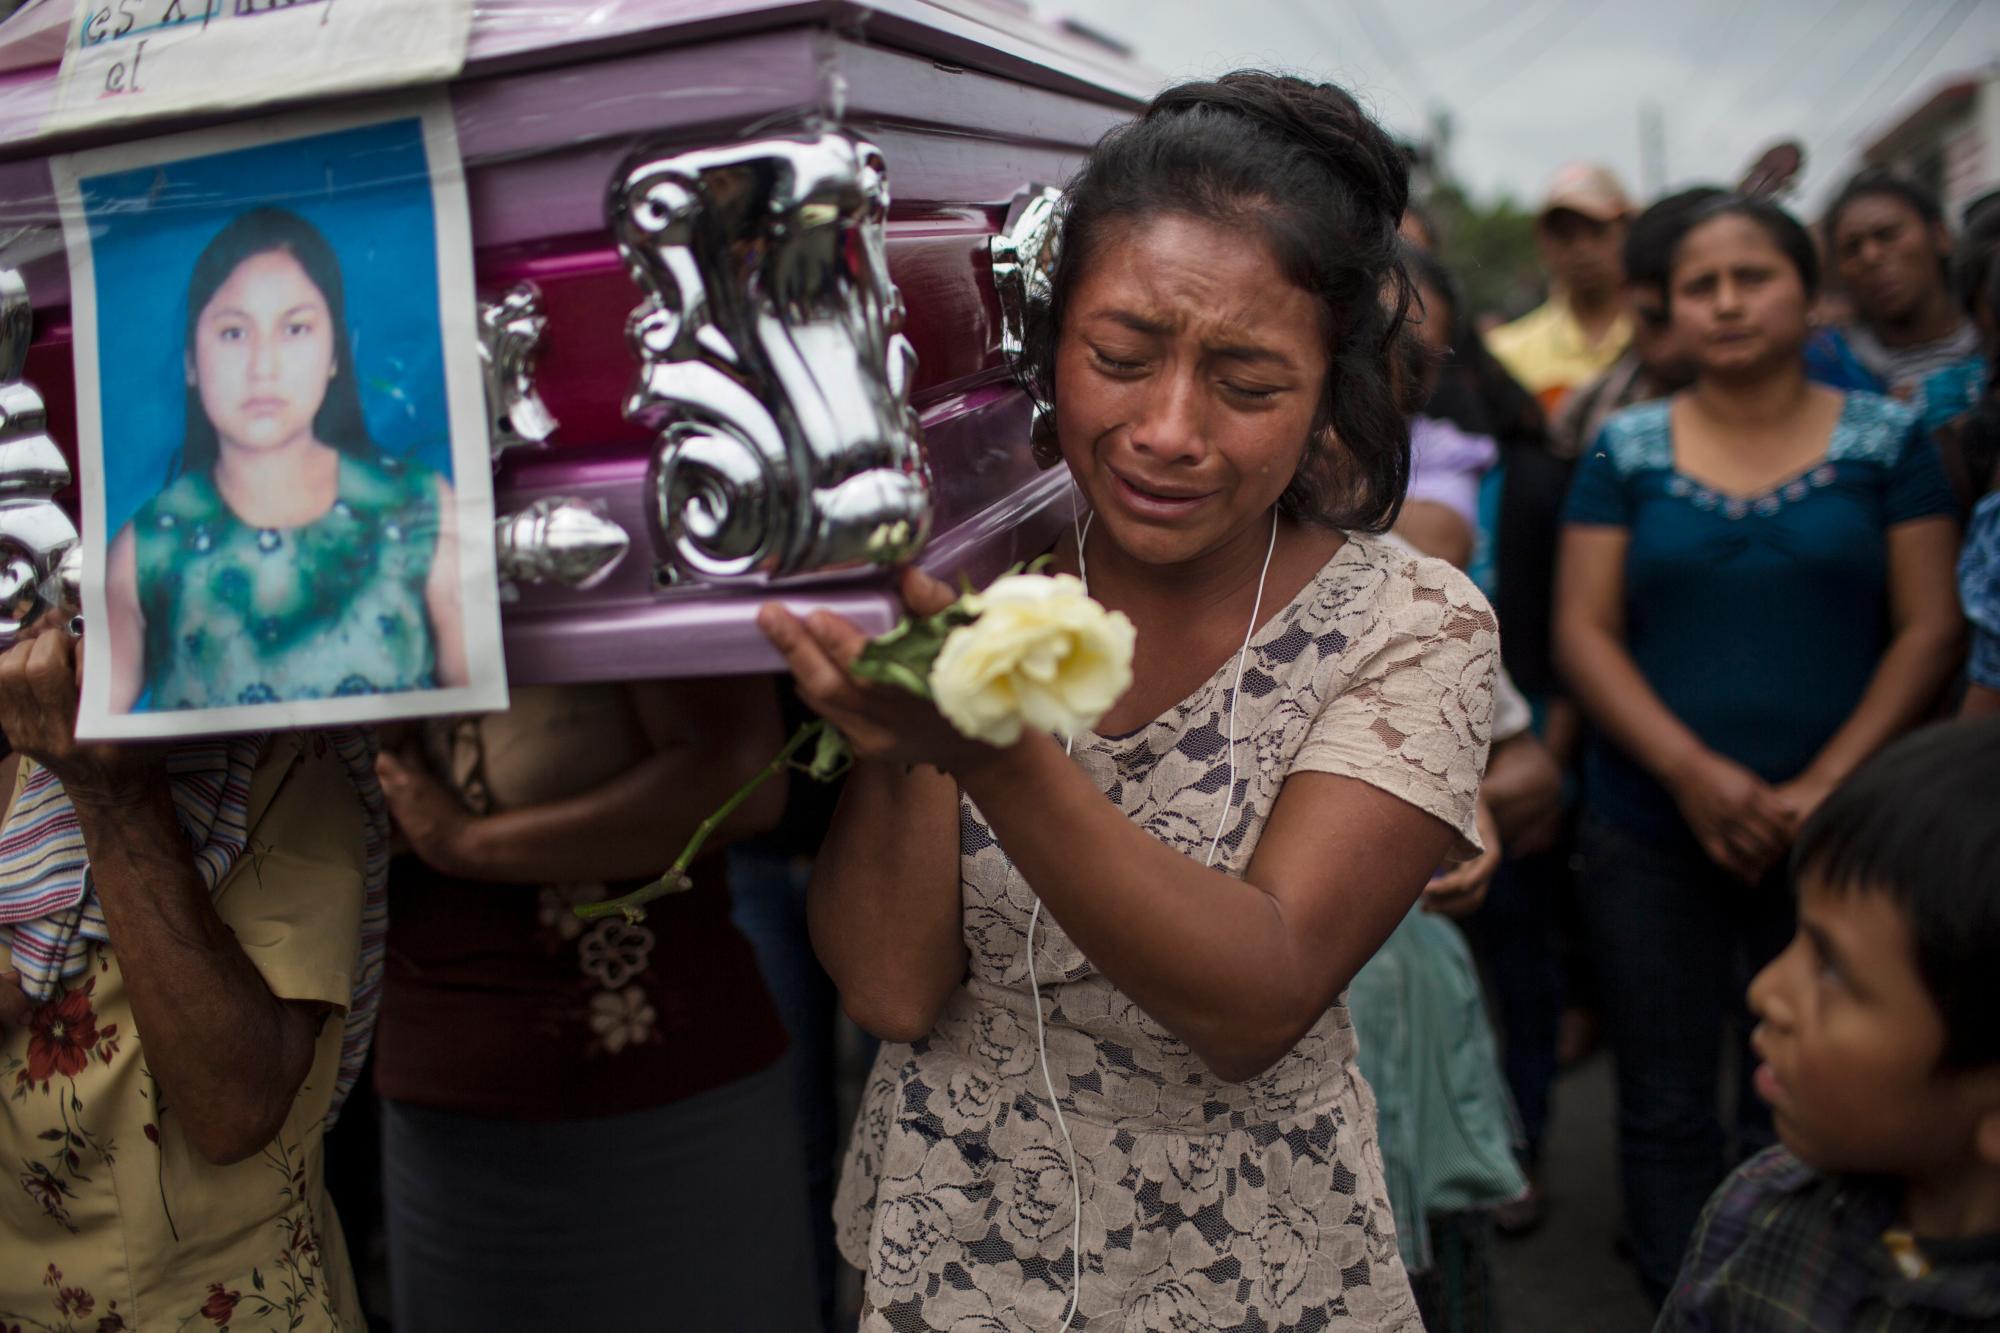 Yoselin Rancho llora mientras llevaba los restos de su mejor amiga, Etelvina Charal, quien murió en la erupción del Volcán de Fuego, o Volcán de Fuego, en San Juan Alotenango, Guatemala, el 10 de junio de 2018.